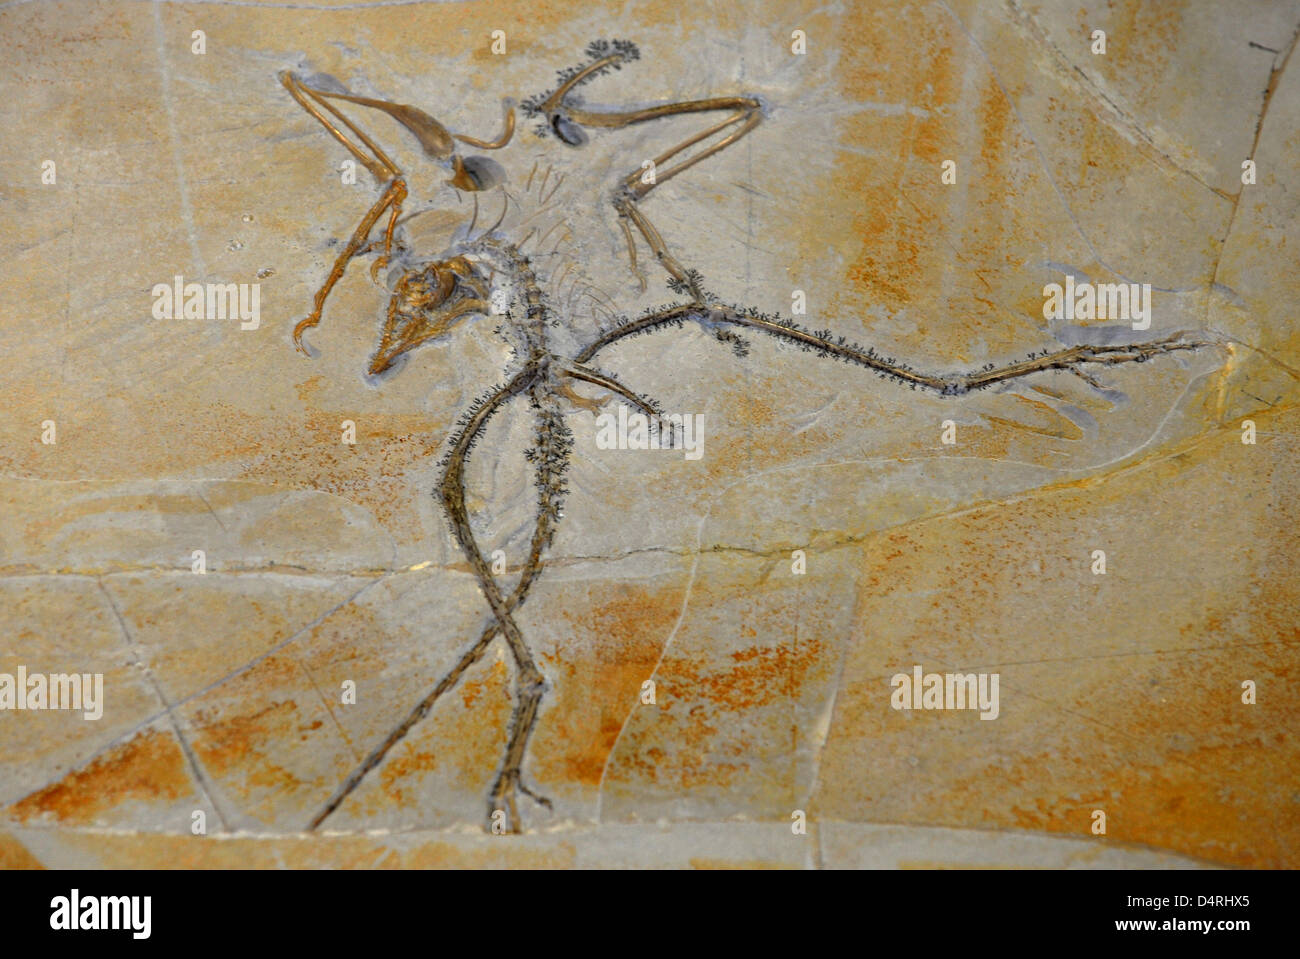 A 150 milioni di anno-vecchio originale fossili di Archaeopteryx(Archaeopteryx-Original Nr.10) visto presso il Museo Paleontologico di Monaco di Baviera, Germania, il 26 ottobre 2009. Il pezzo che è stato fino ad ora considerate perse, sarà scientificamente analizzato per la prima volta. Esso è programmato per essere messo in mostra a Monaco di Baviera Giorni di minerali. (?Mineralientage Muenchen?). Foto: FRANK LEONHARDT Foto Stock